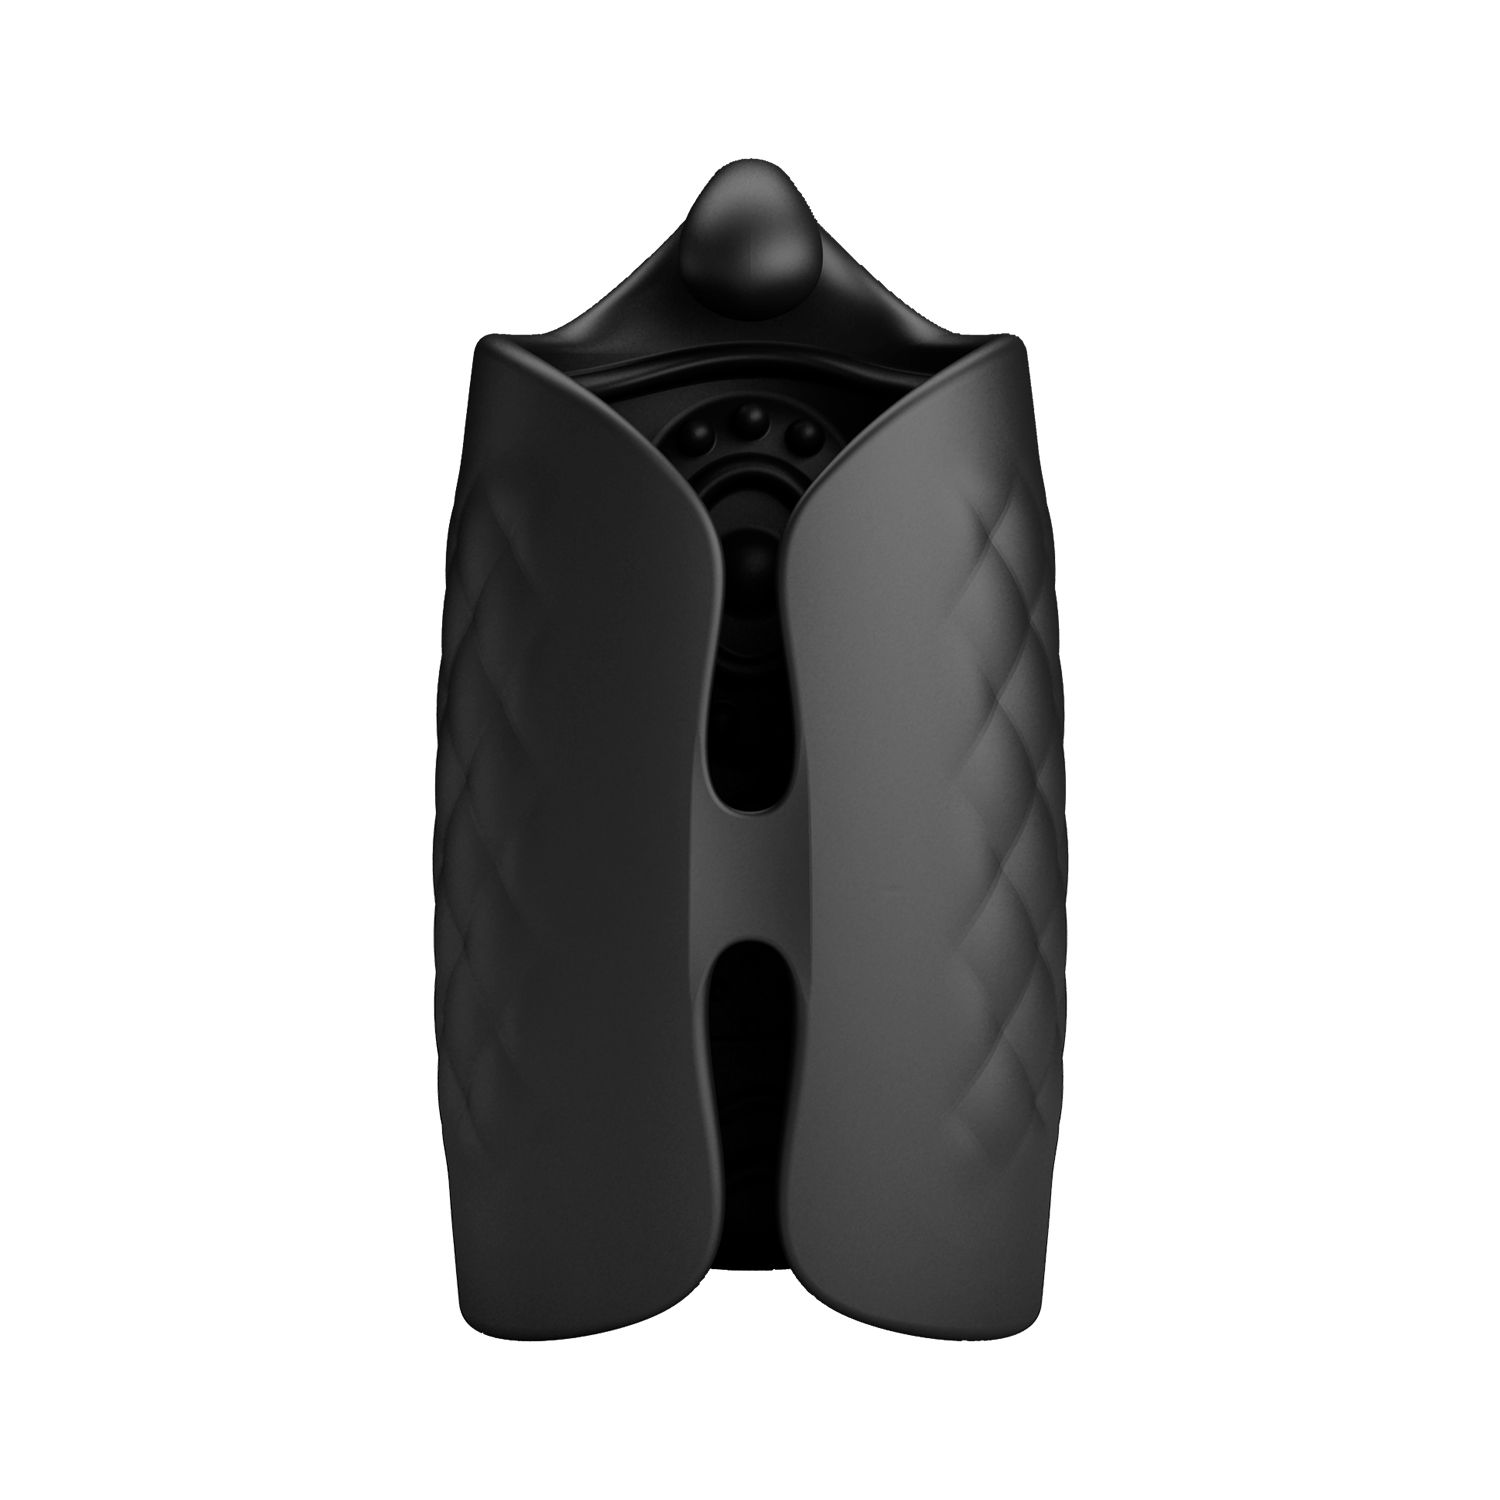 Черный мастурбатор с вибростимуляцией головки Black Glans Trainer. 10 режимов вибрации.